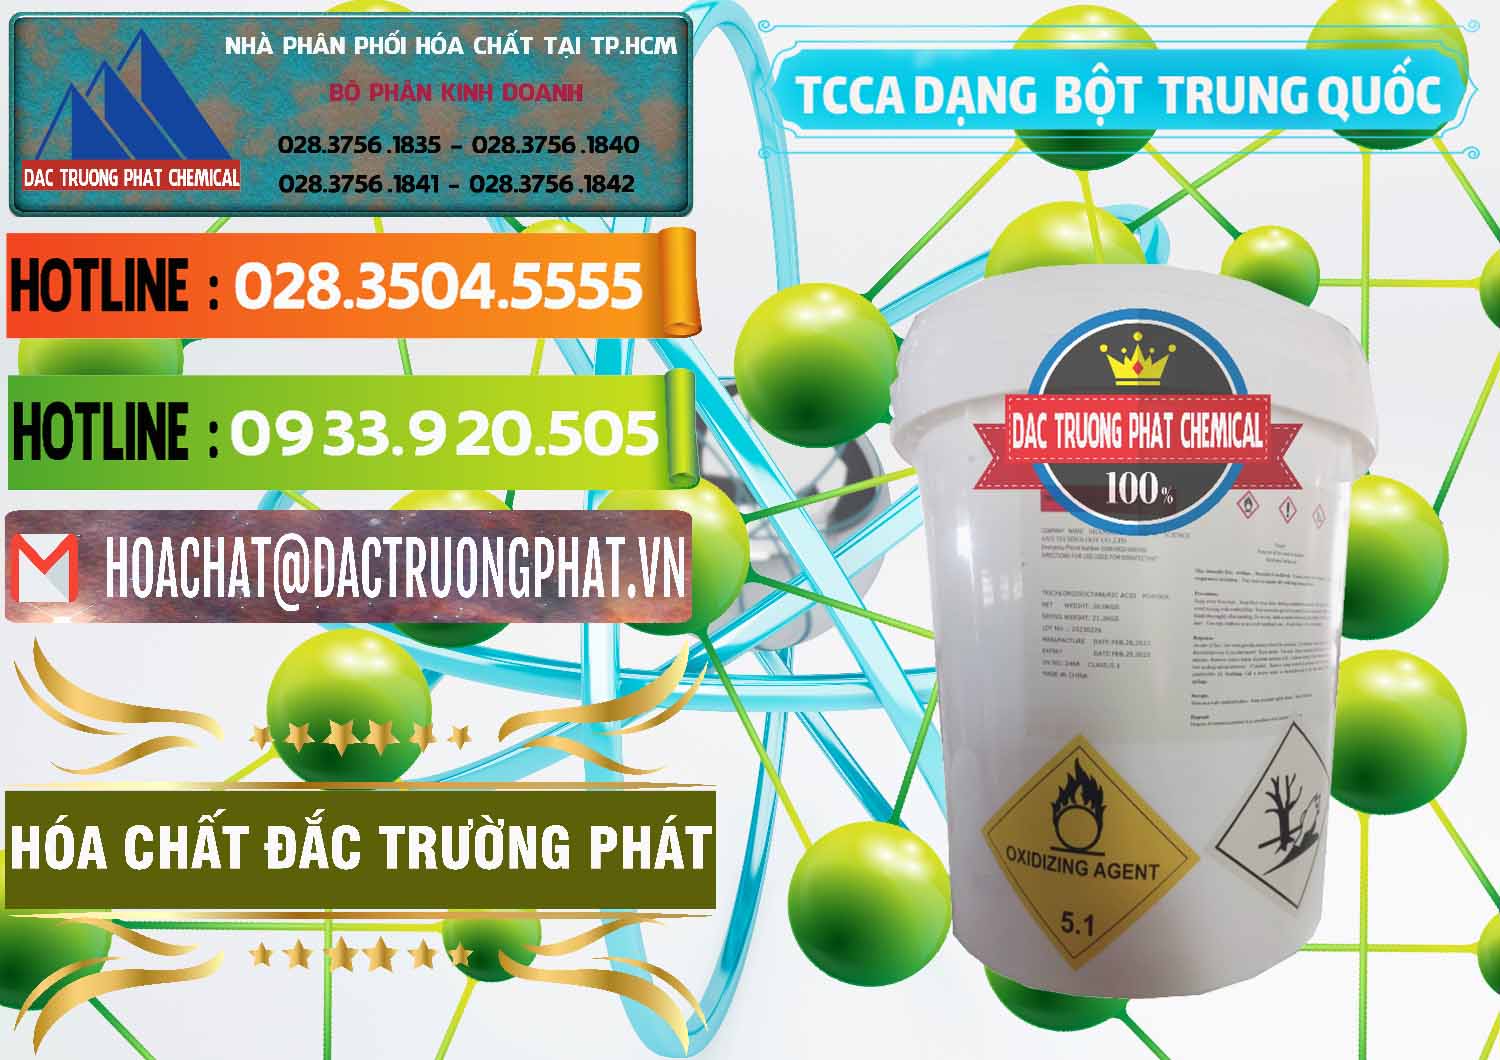 Cty bán _ cung ứng TCCA - Acid Trichloroisocyanuric Dạng Bột Thùng 20kg Trung Quốc China - 0386 - Cty kinh doanh _ phân phối hóa chất tại TP.HCM - cungcaphoachat.com.vn